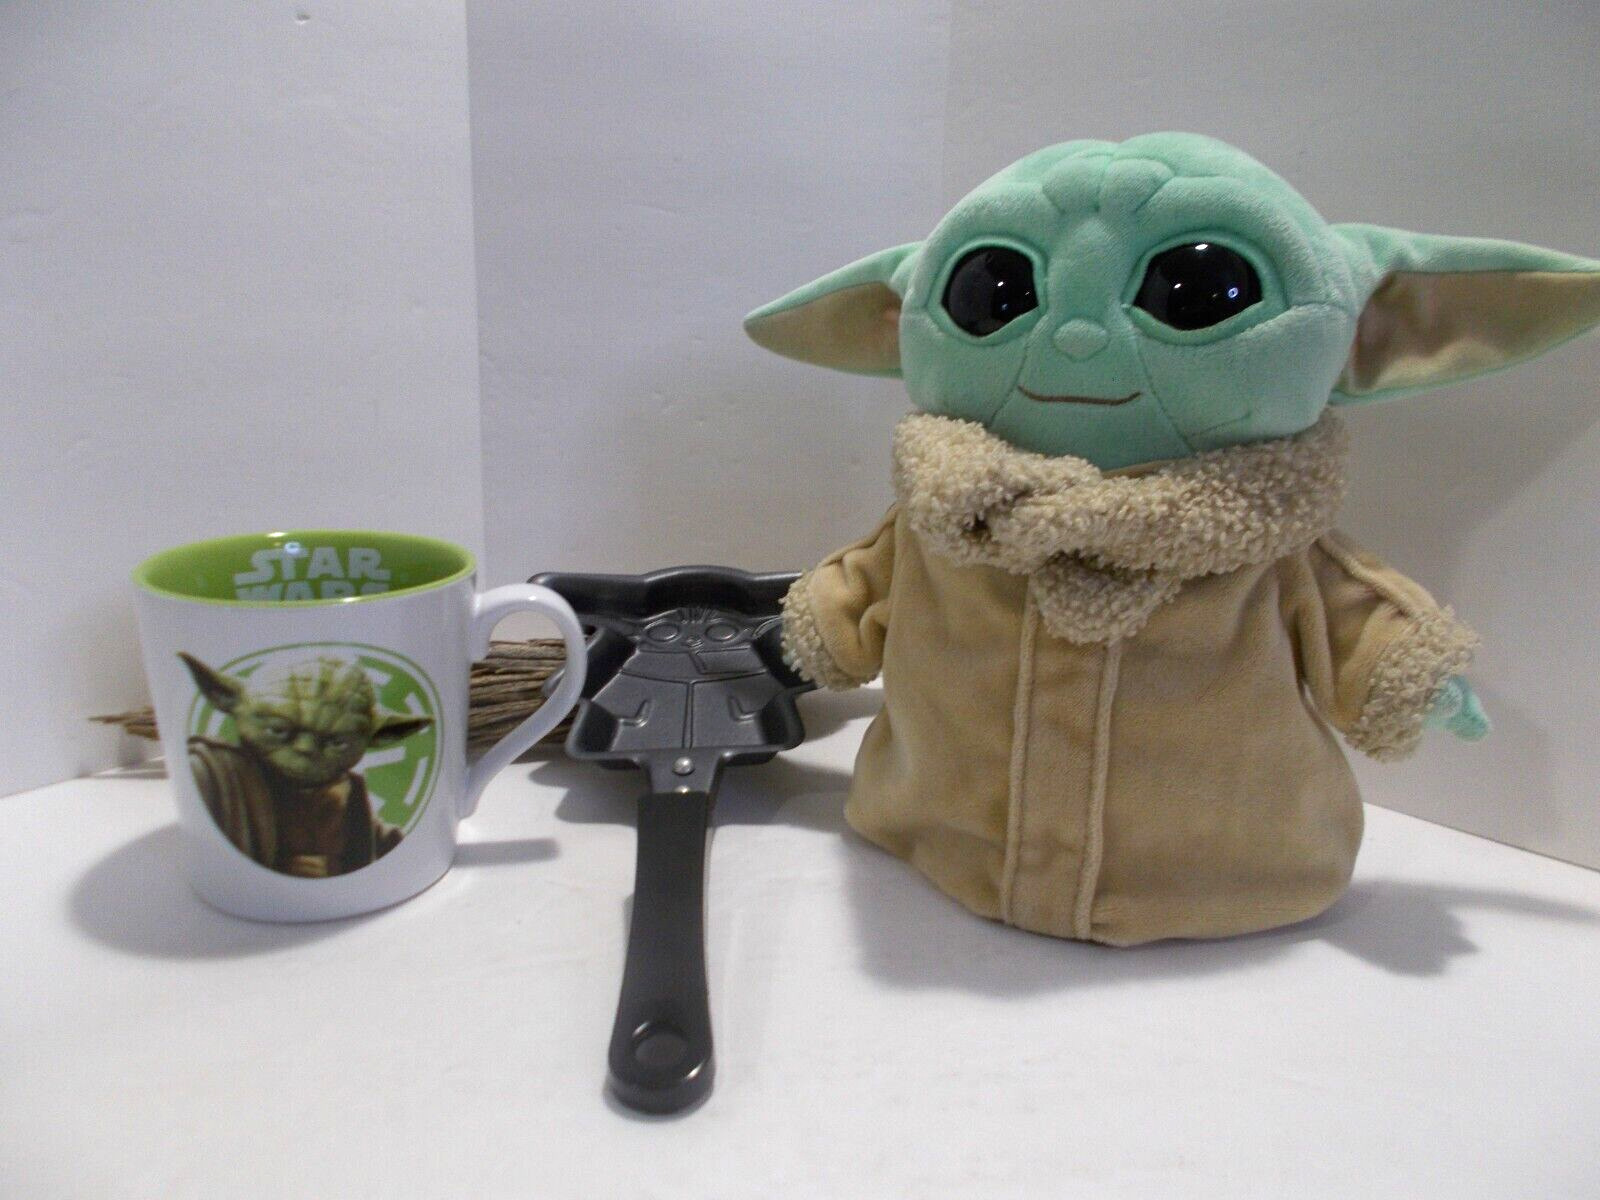 2014 Star Wars Yoda Vandor Coffee Mug, Cute Yoda Pancake Maker and Yoda Plushy